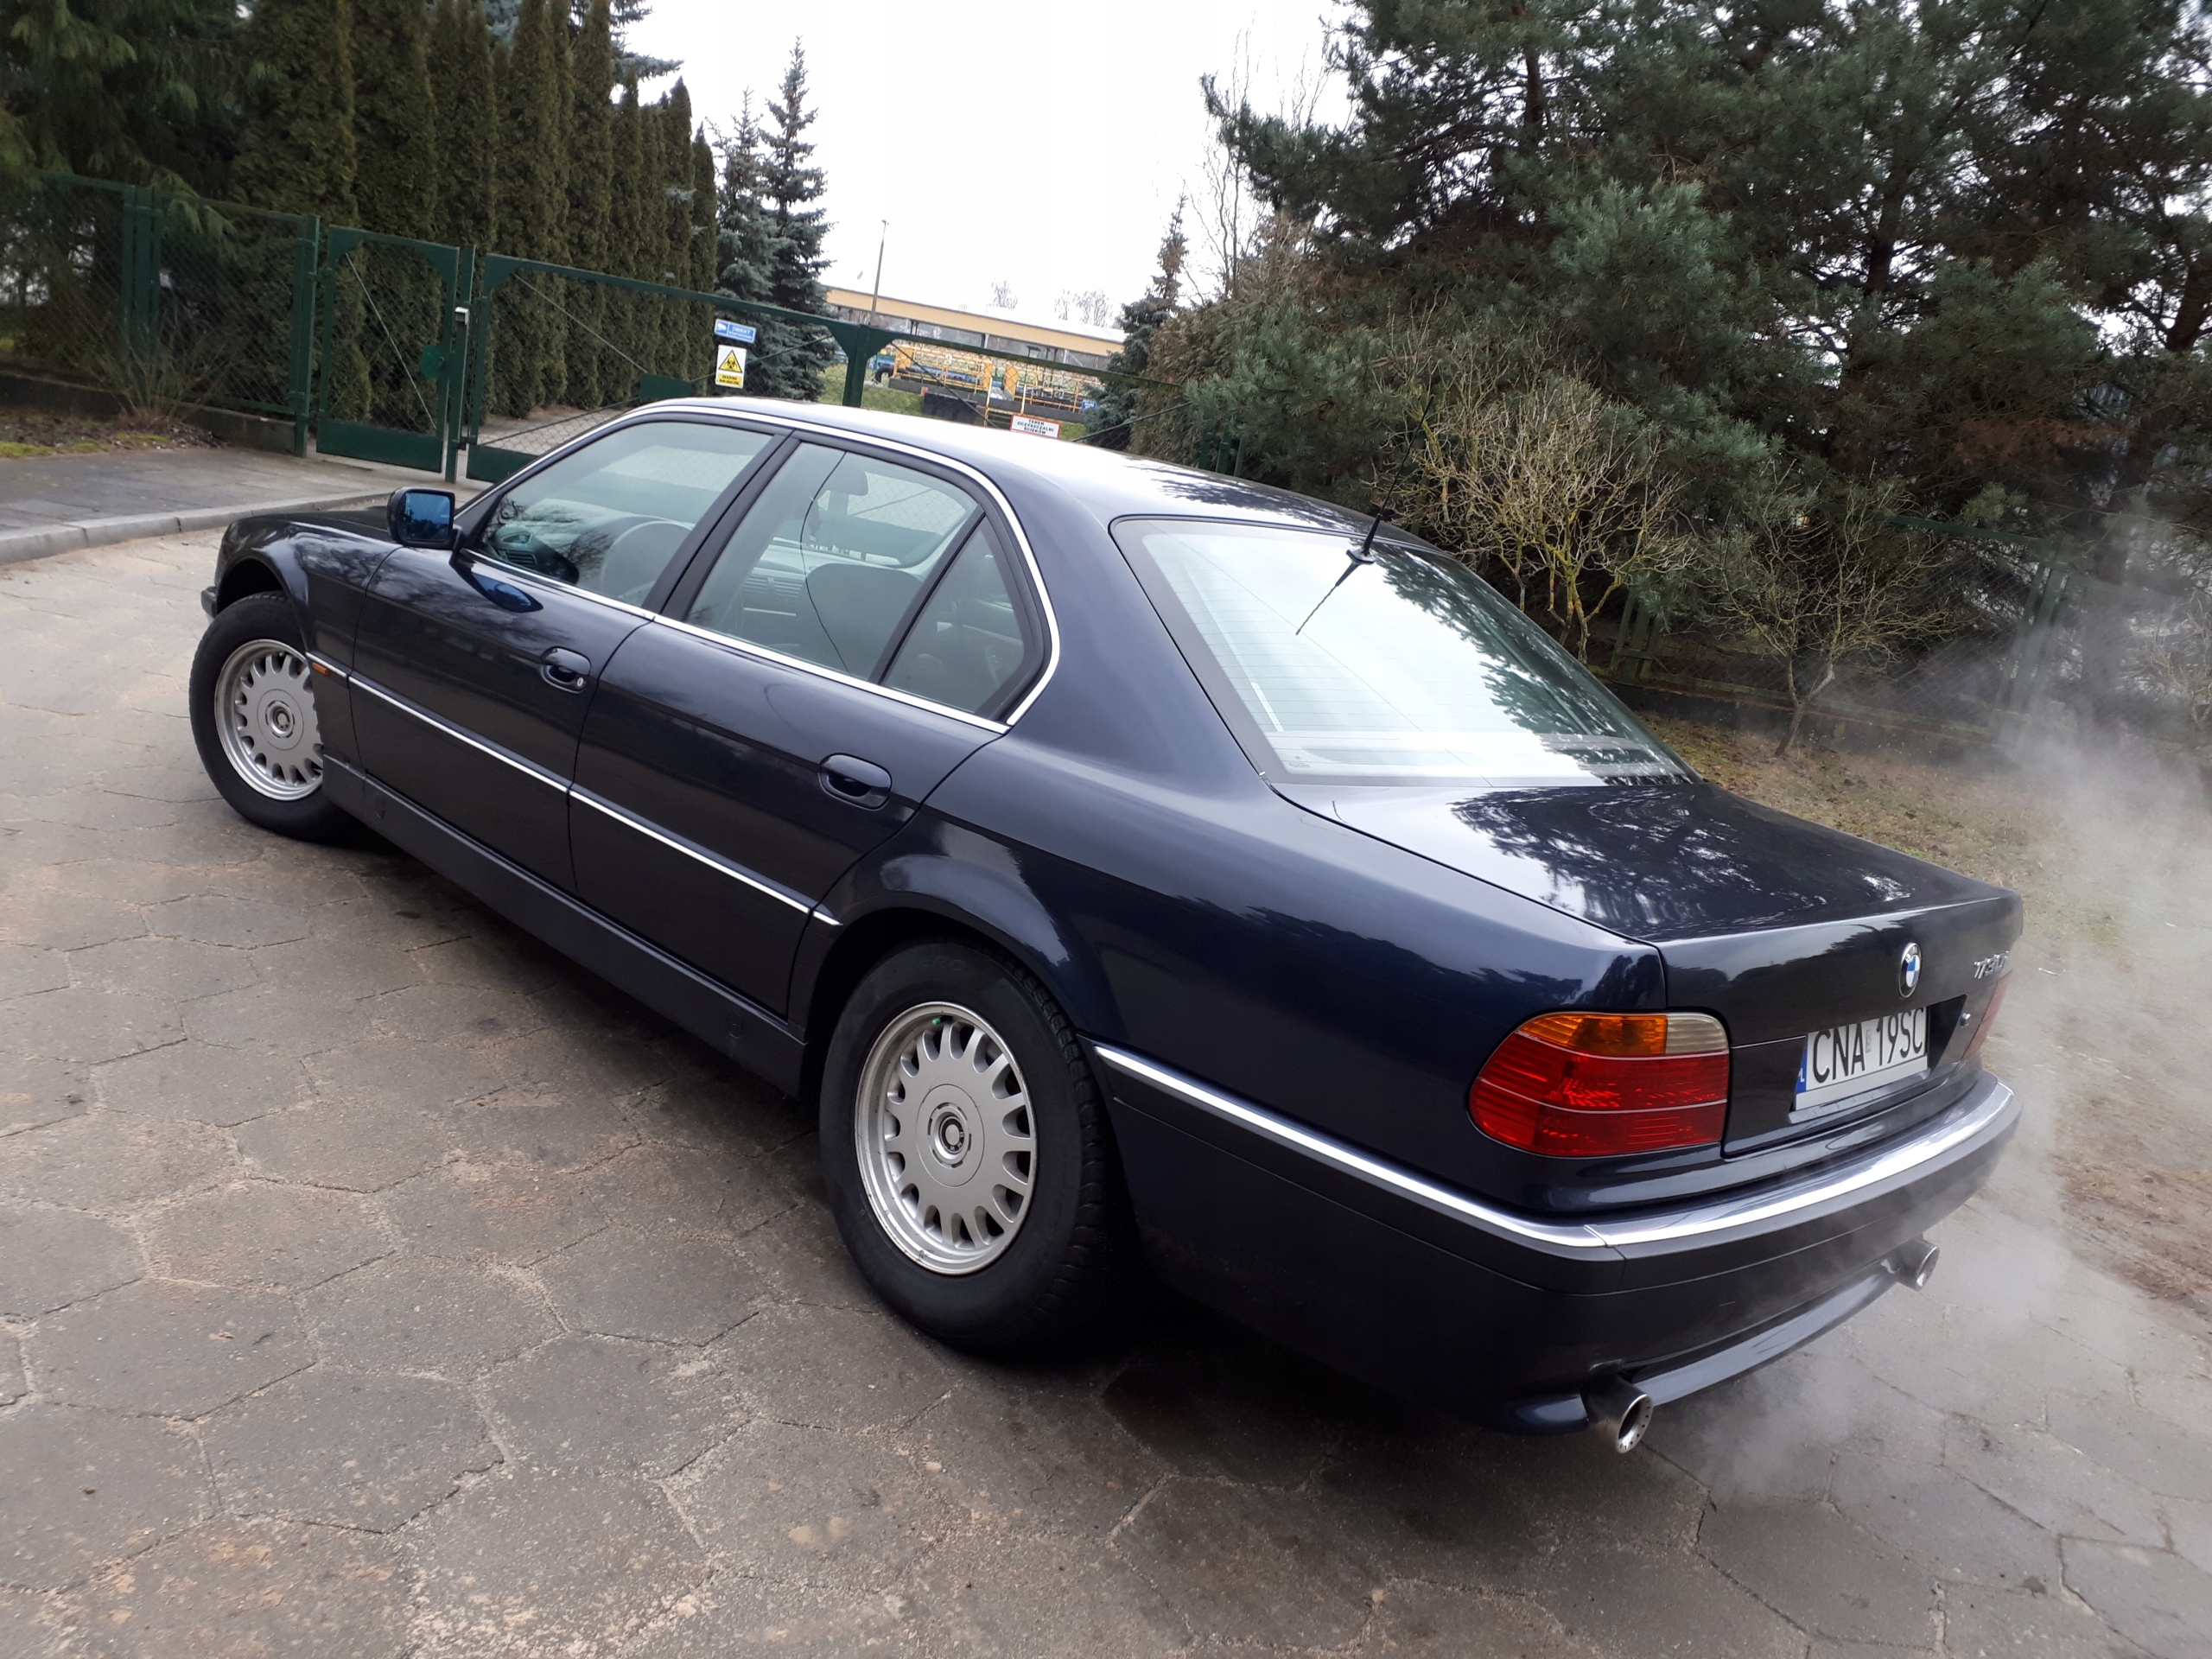 BMW Seria 7 E38 3.0 V8 Manual 7780796682 oficjalne